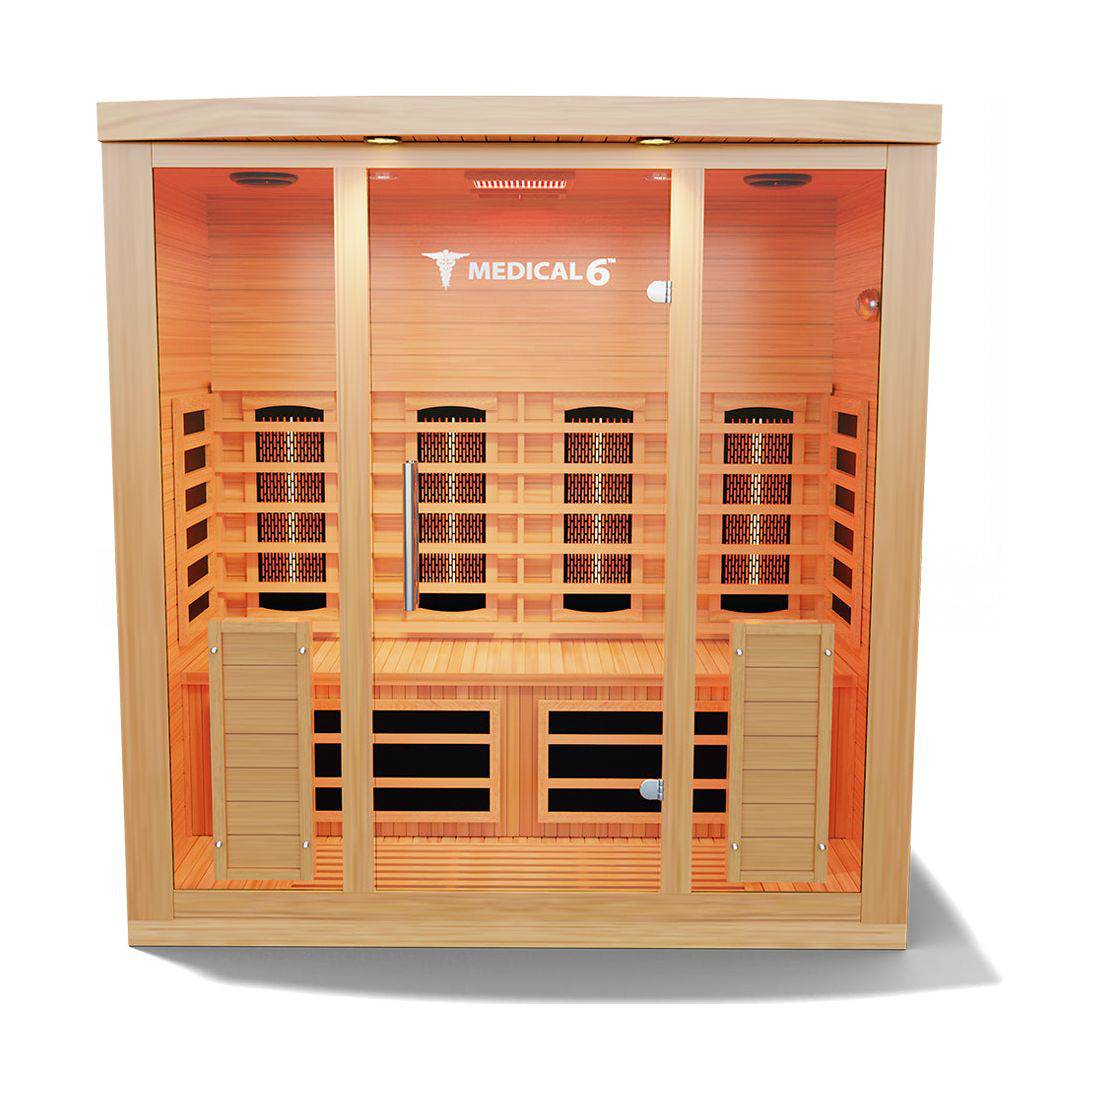 Medical Saunas Medical 6 Infrared Sauna (4 Person) - Serenity Provision